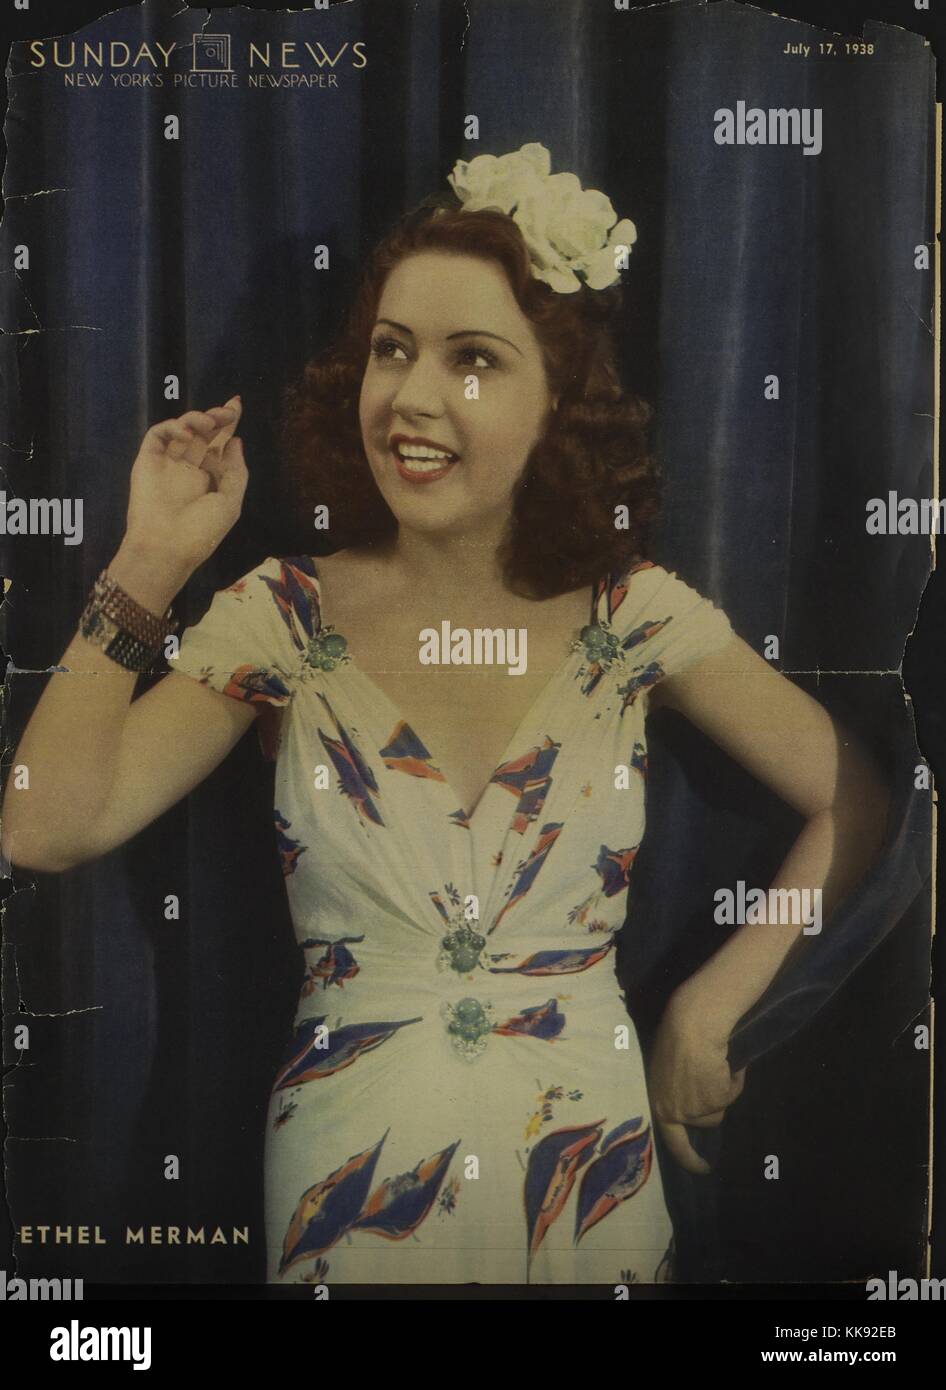 Ethel Merman, American attrice e cantante, noto soprattutto per la sua voce e i ruoli nel teatro musicale, che indossa un abito bianco con viola con motivi floreali, sul coperchio della New York domenica News, 1938. Dalla Biblioteca Pubblica di New York. Foto Stock